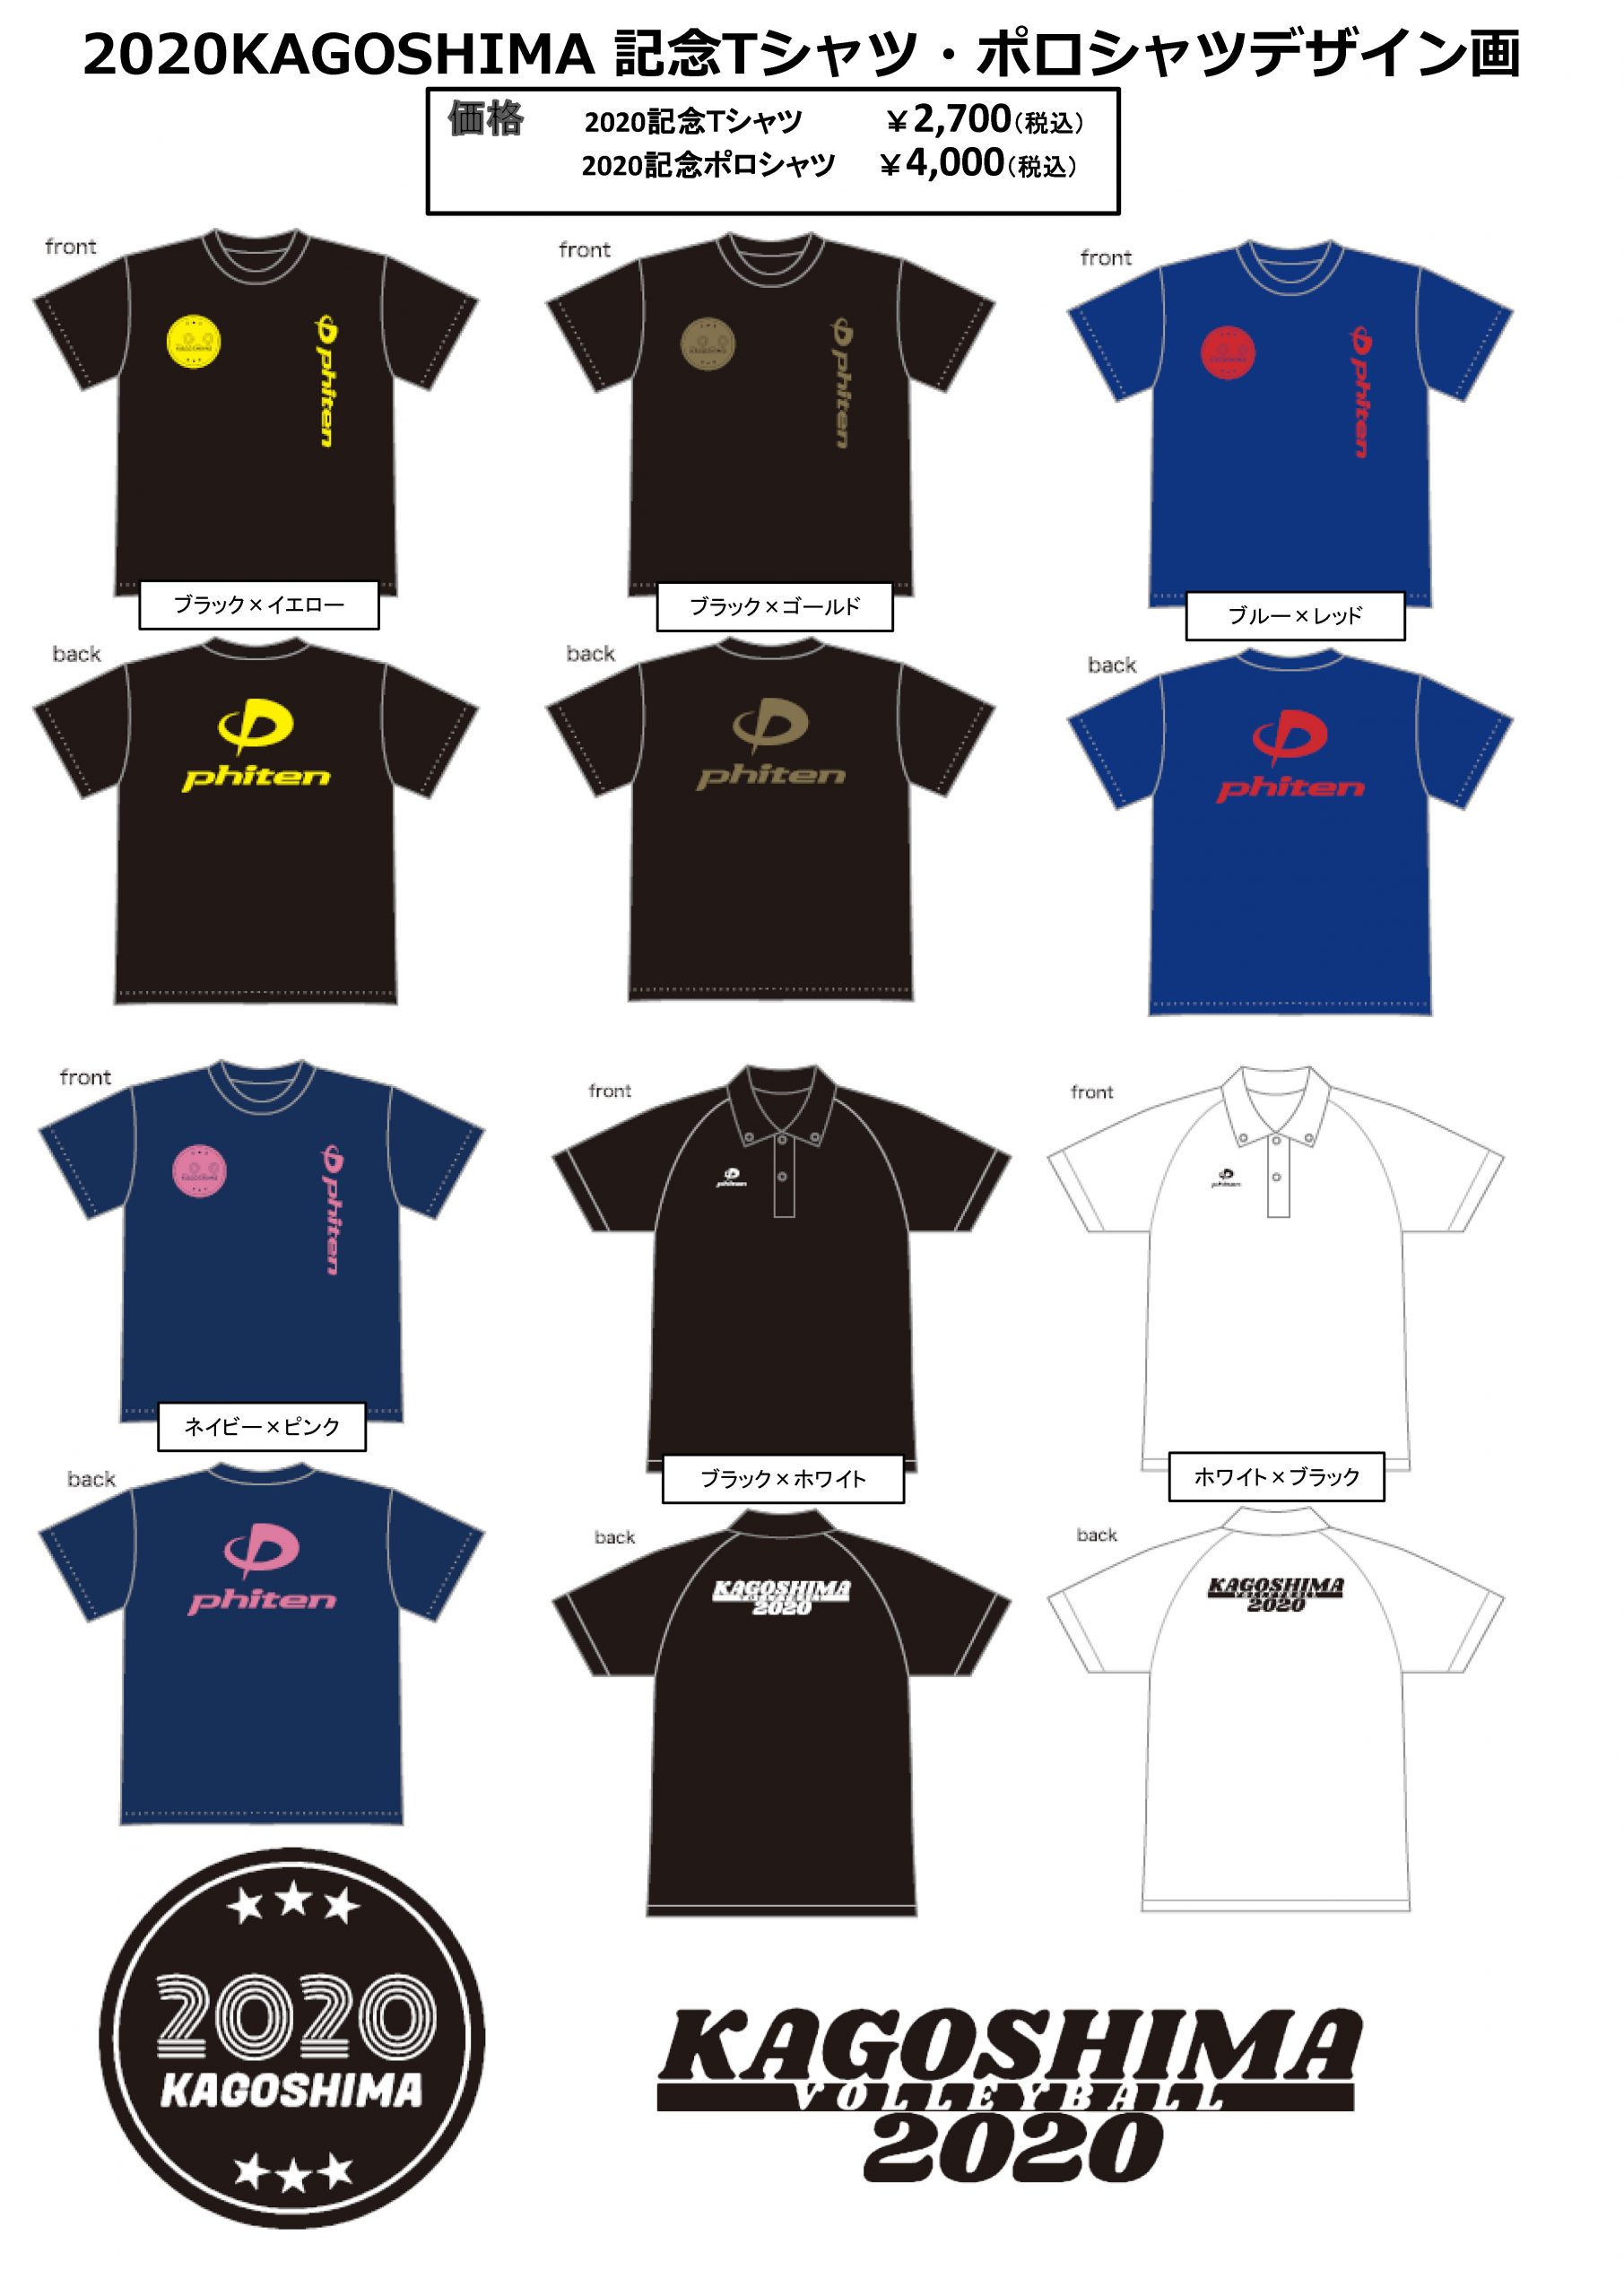 お知らせ】2020KAGOSHIMA 記念Tシャツ・ポロシャツについて